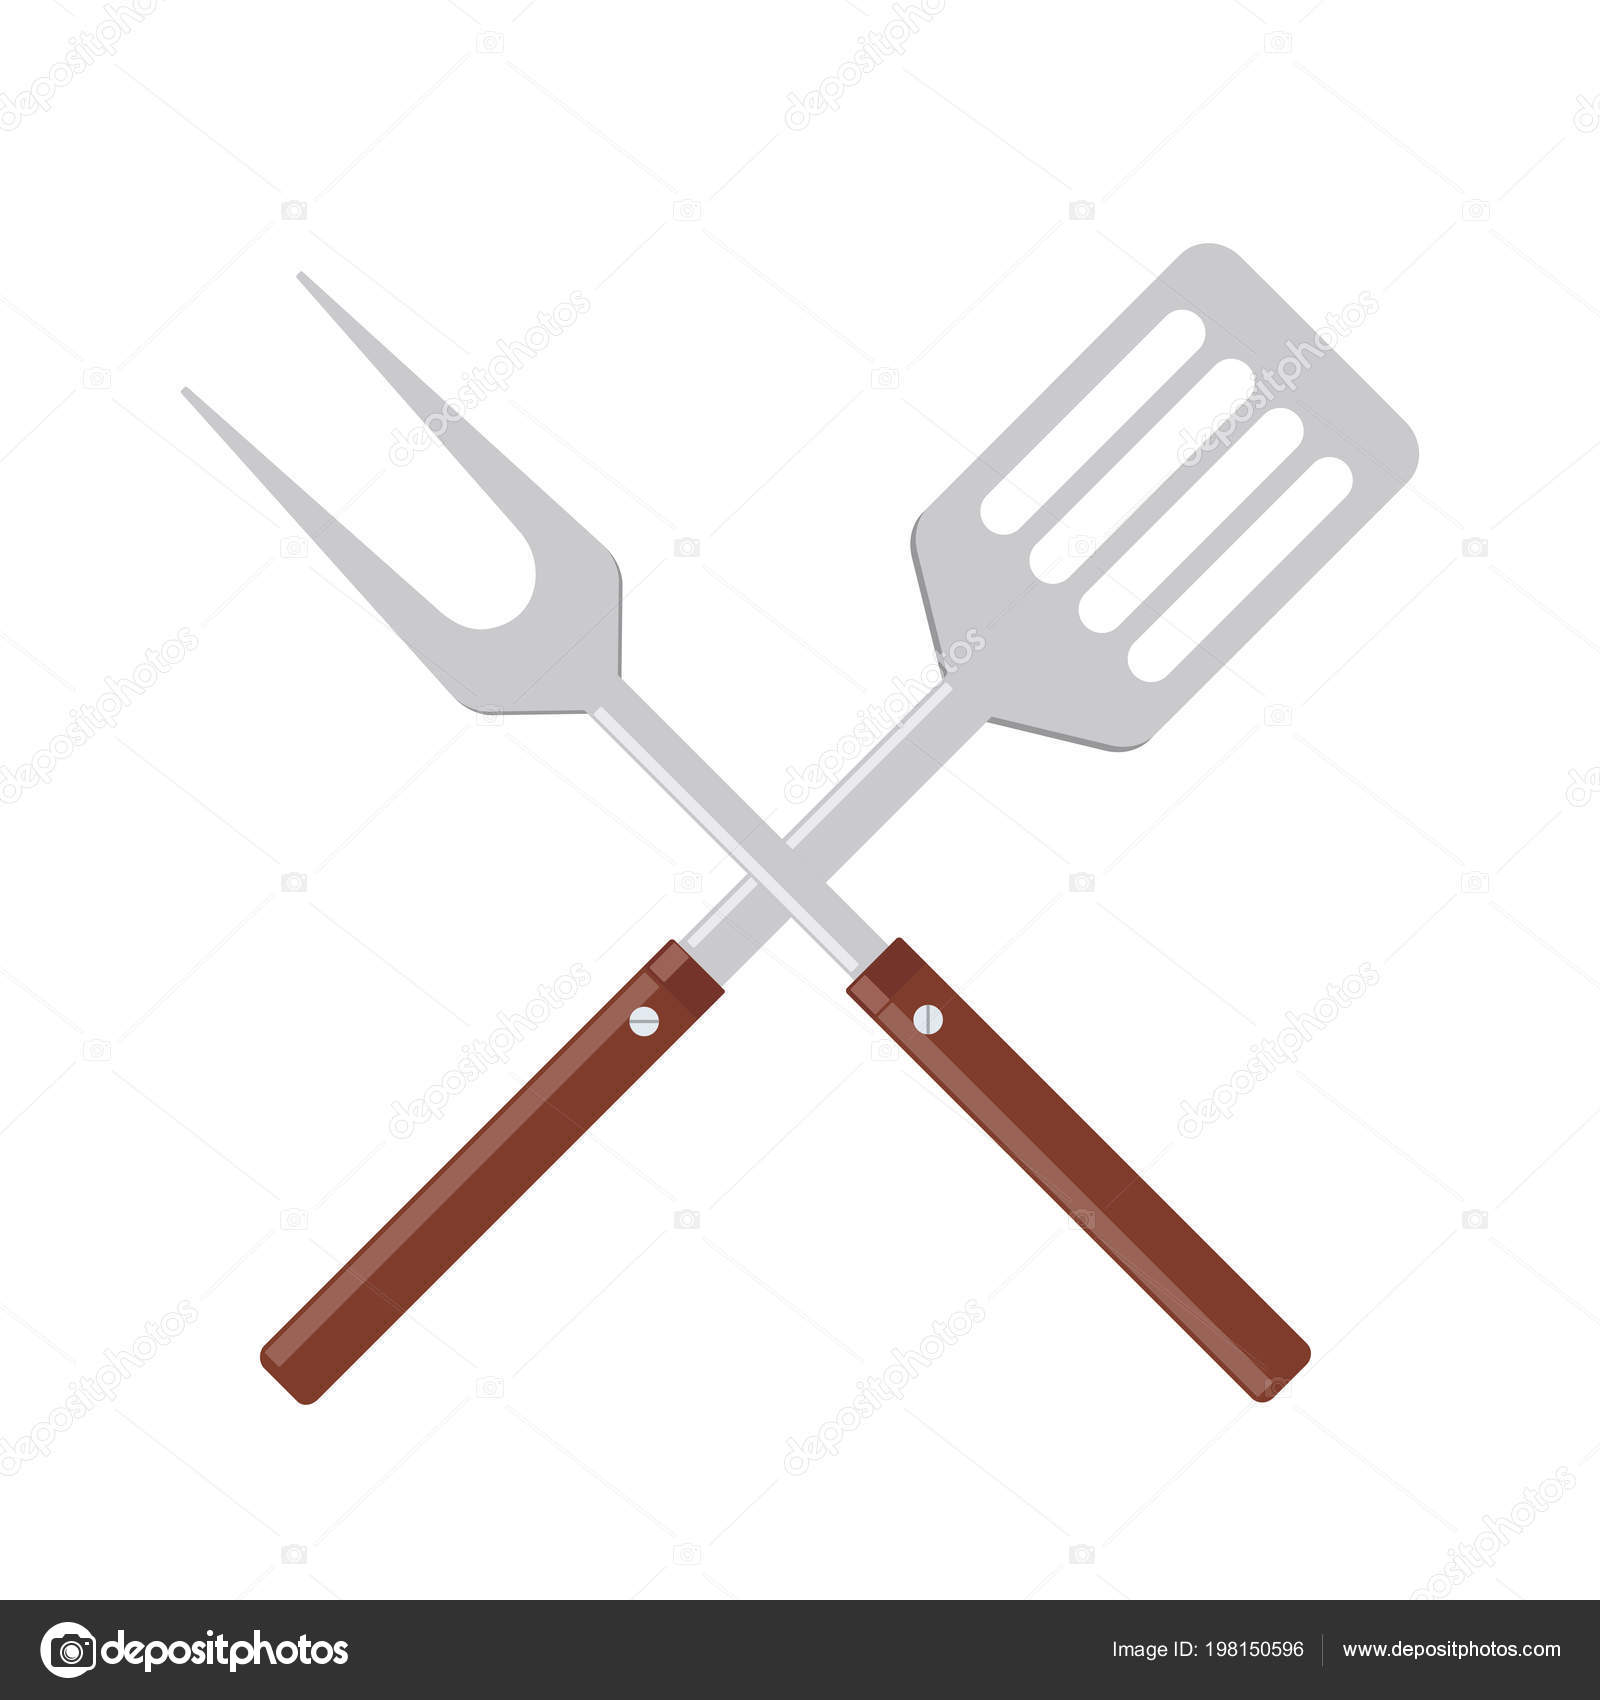 Garfo de churrasco - ícones de comida grátis